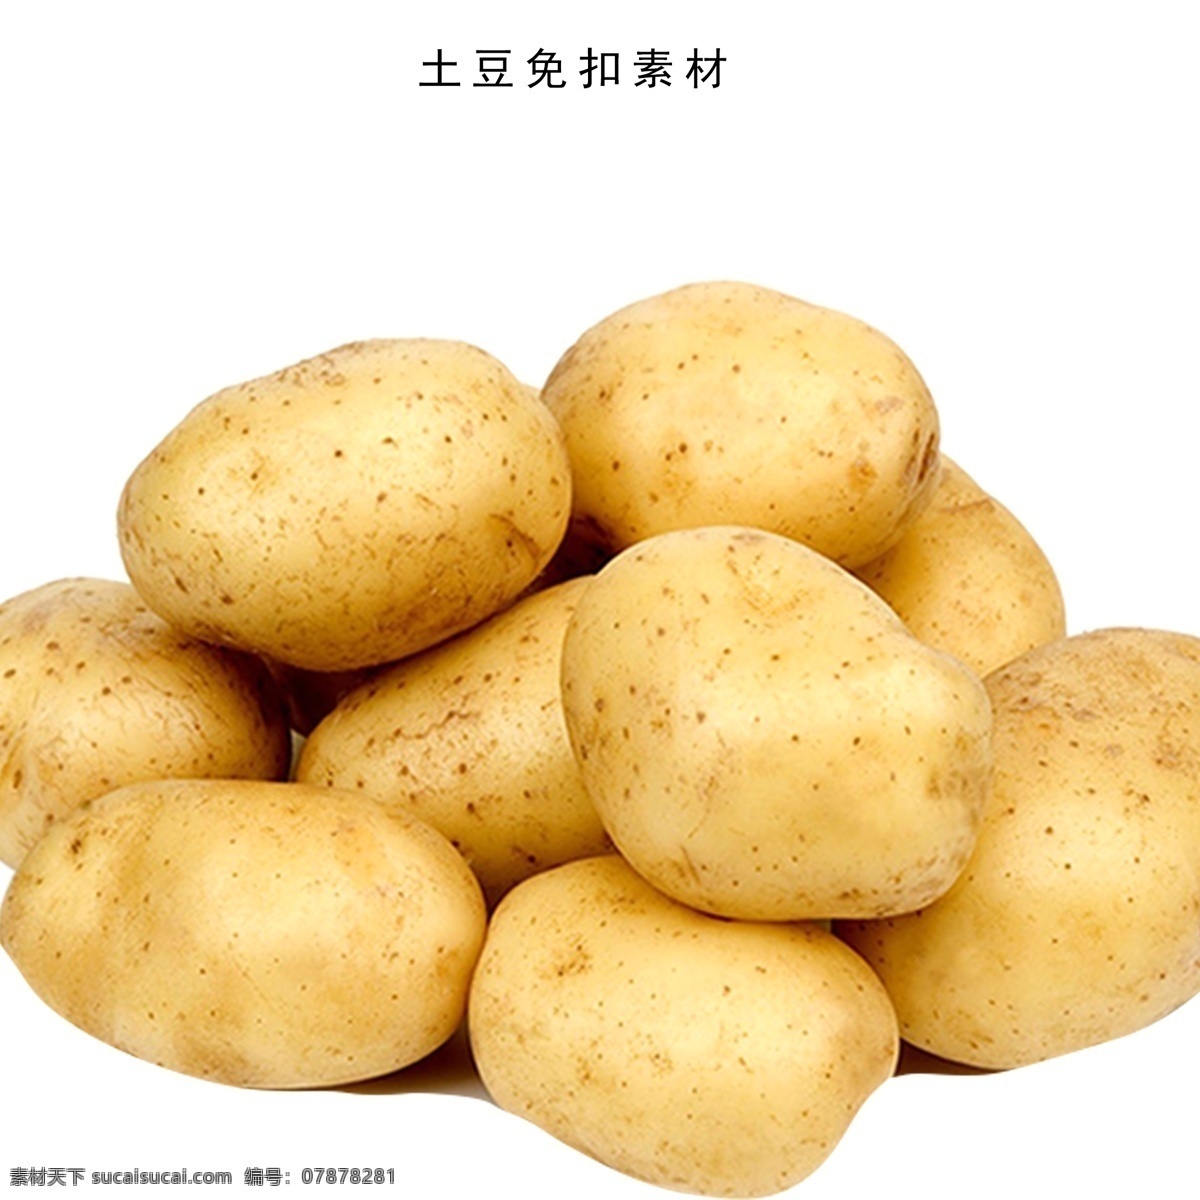 土豆 农产品 土豆素材 免扣土豆 农副产品 素材免扣 李世亮 共享设计 分层